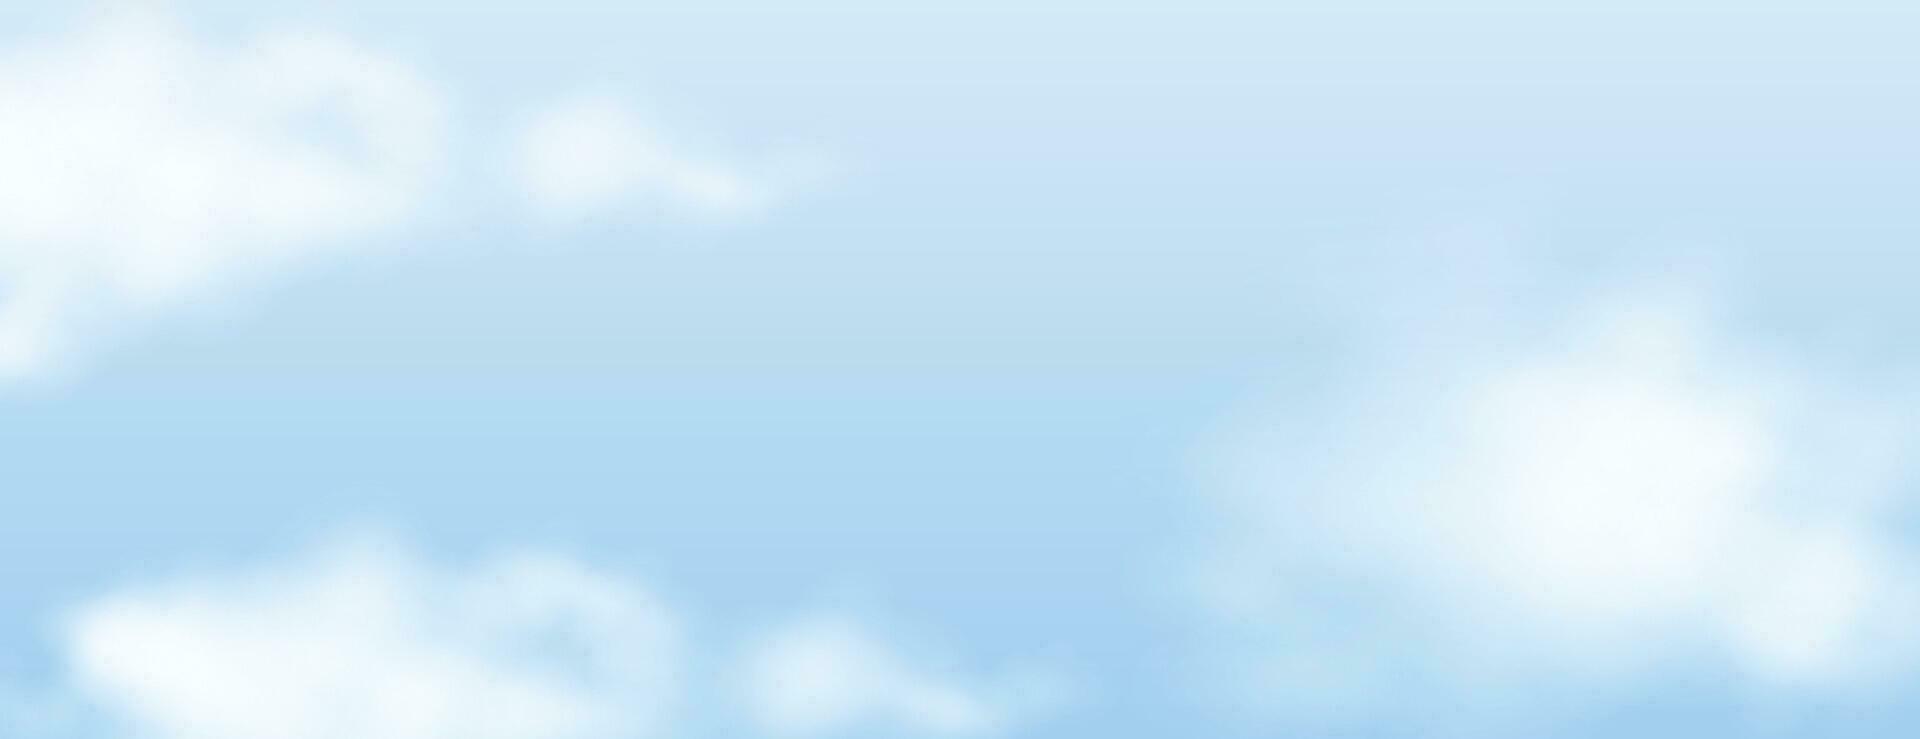 bakgrund med moln på blå himmel. vektor bakgrund